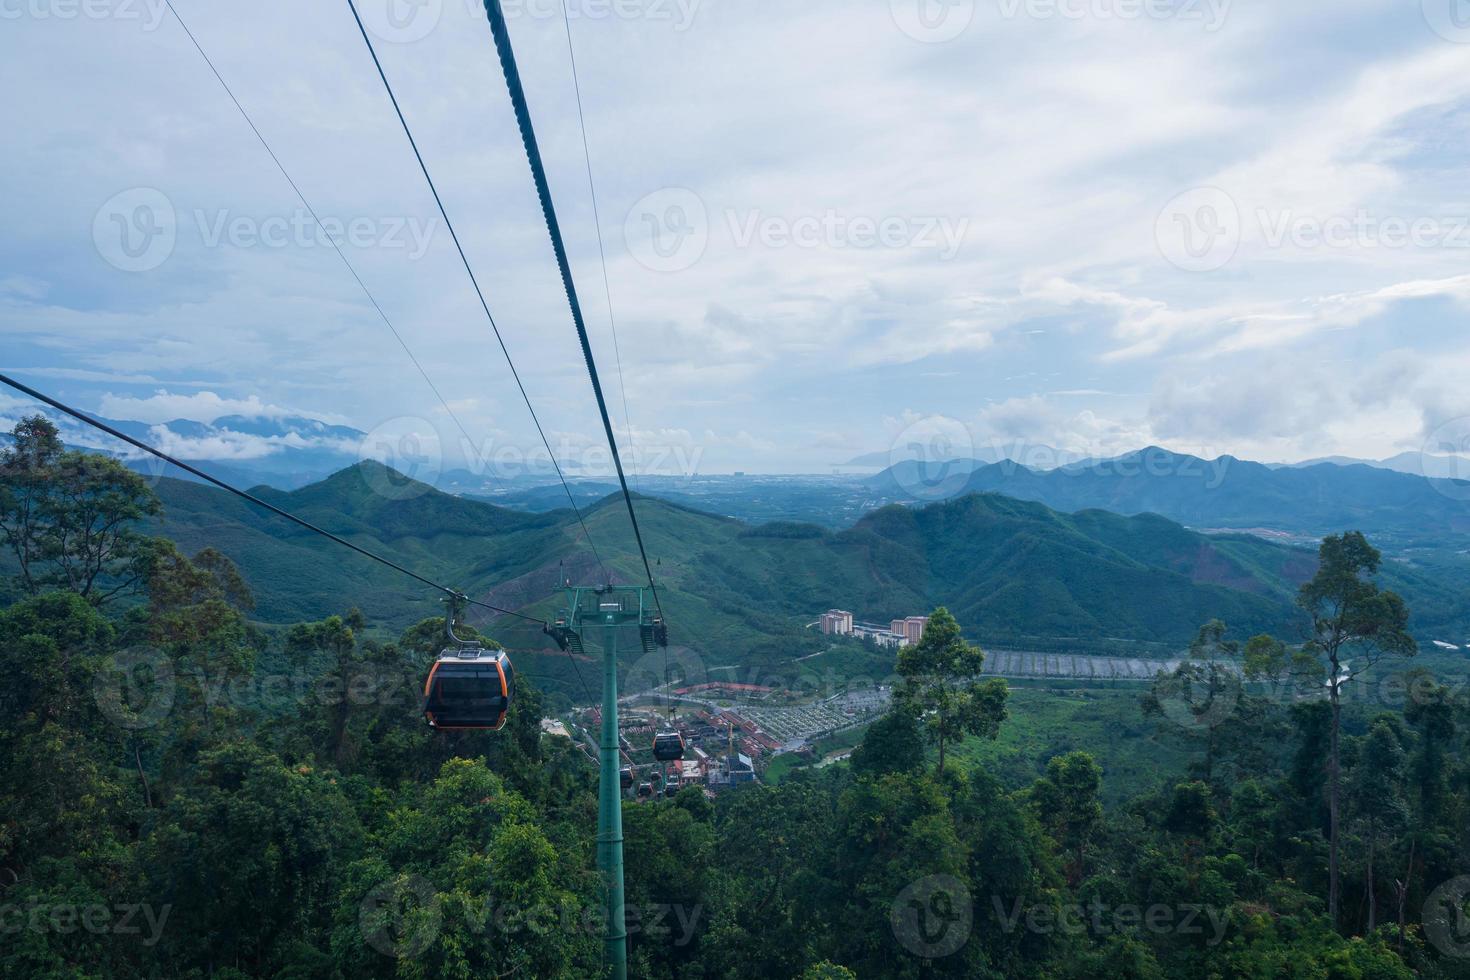 Kabel Auto zu berühmt Tourist Attraktion Frankreich Stadt Stil beim das oben von das ba n / a Hügel, da nang, Vietnam foto